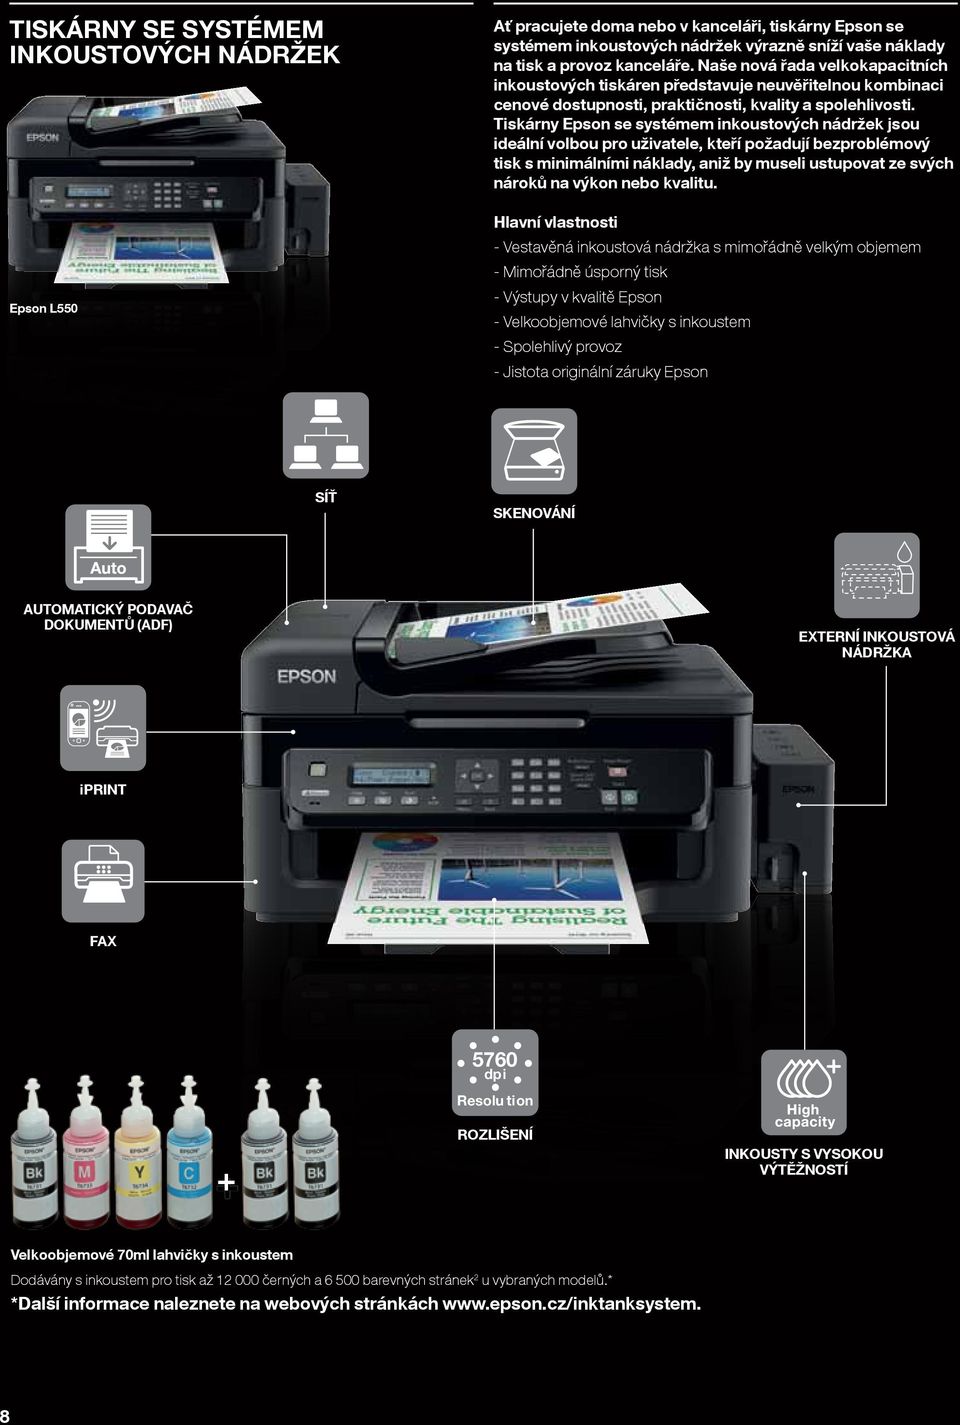 Tiskárny Epson se systémem inkoustových nádržek jsou ideální volbou pro uživatele, kteří požadují bezproblémový tisk s minimálními náklady, aniž by museli ustupovat ze svých nároků na výkon nebo